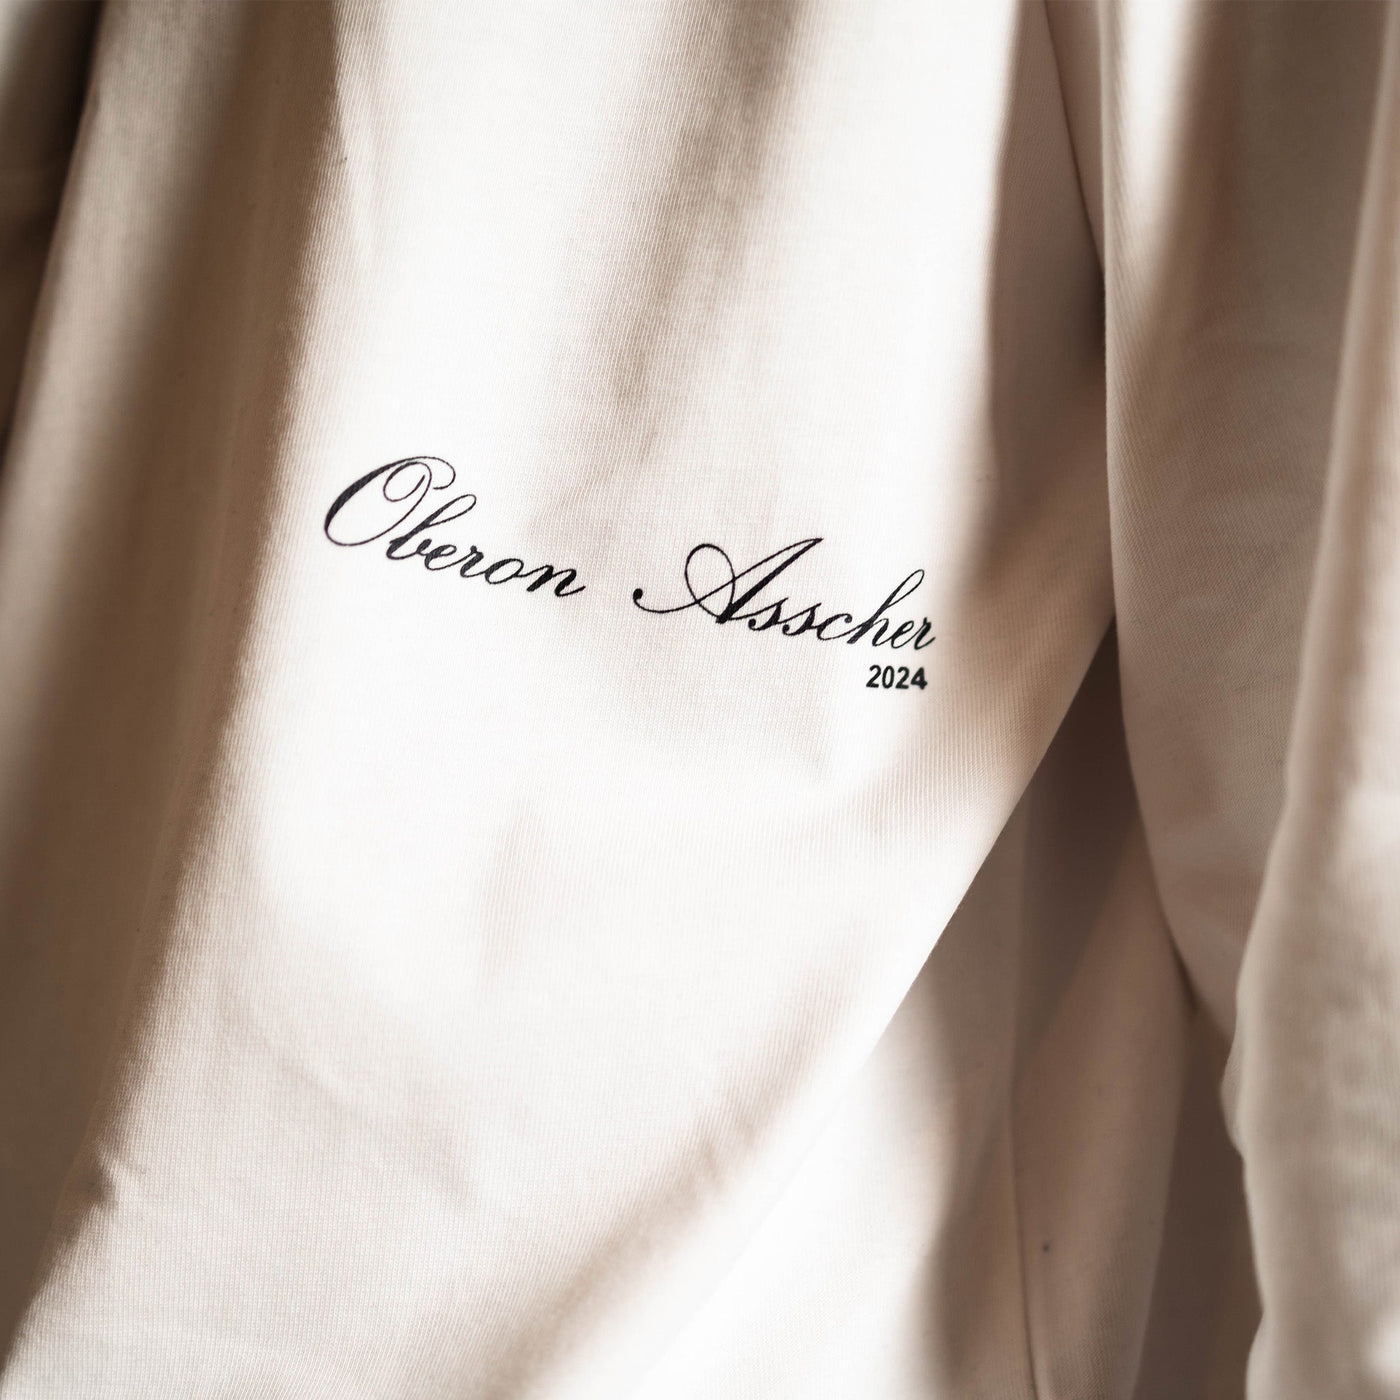 Oberon 24' Long Sleeve - Oberon Asscher